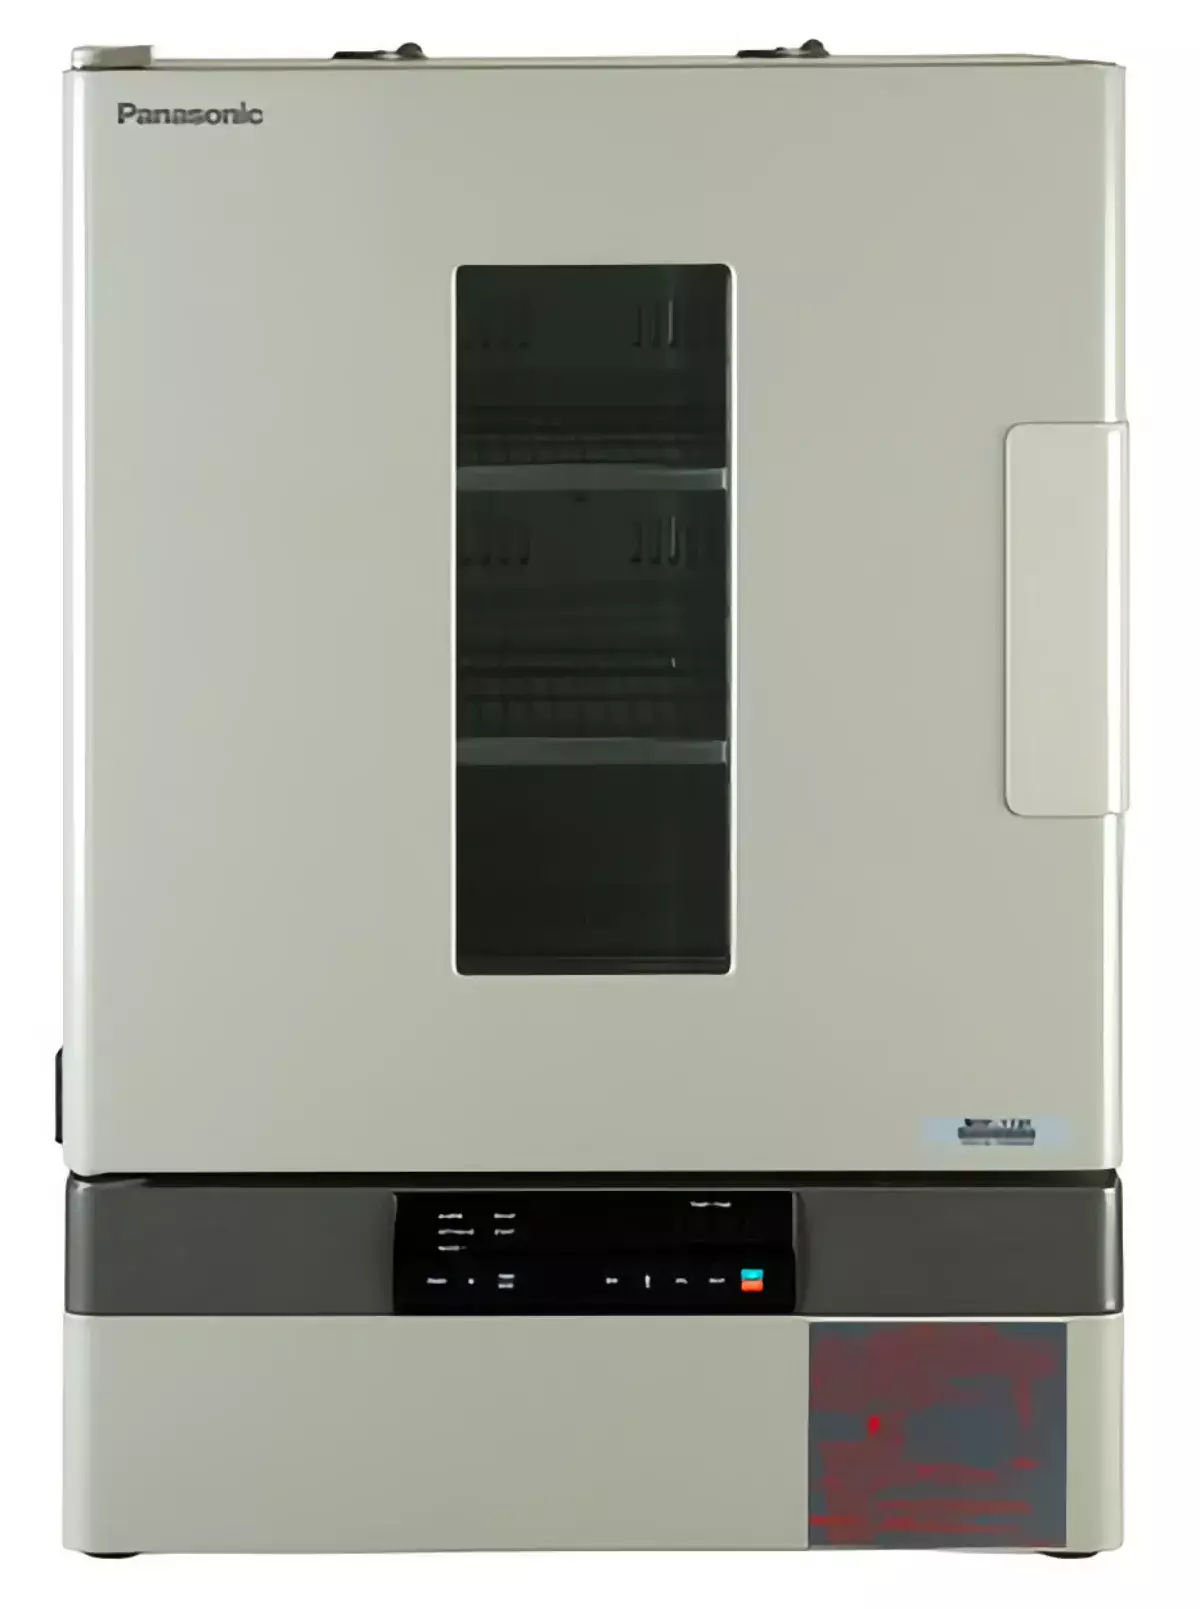 Стерилизатор суховоздушный 150 л, до 200°С, MOV-212S, принуд. вент.,4 программы, Sanyo (Panasonic)